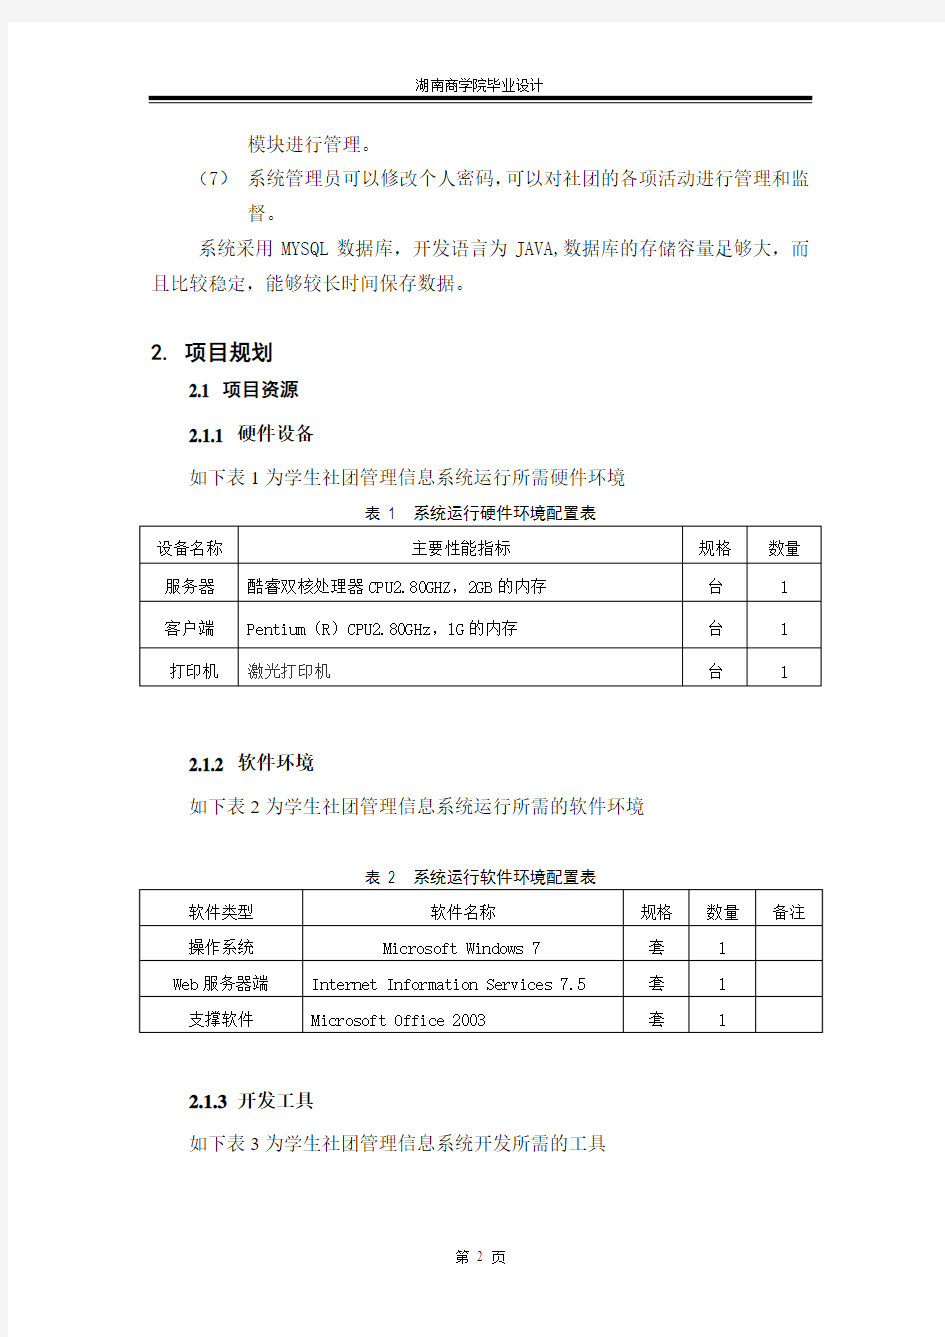 090310086-徐雅琴-信息管理-学生社团管理信息系统设计与开发